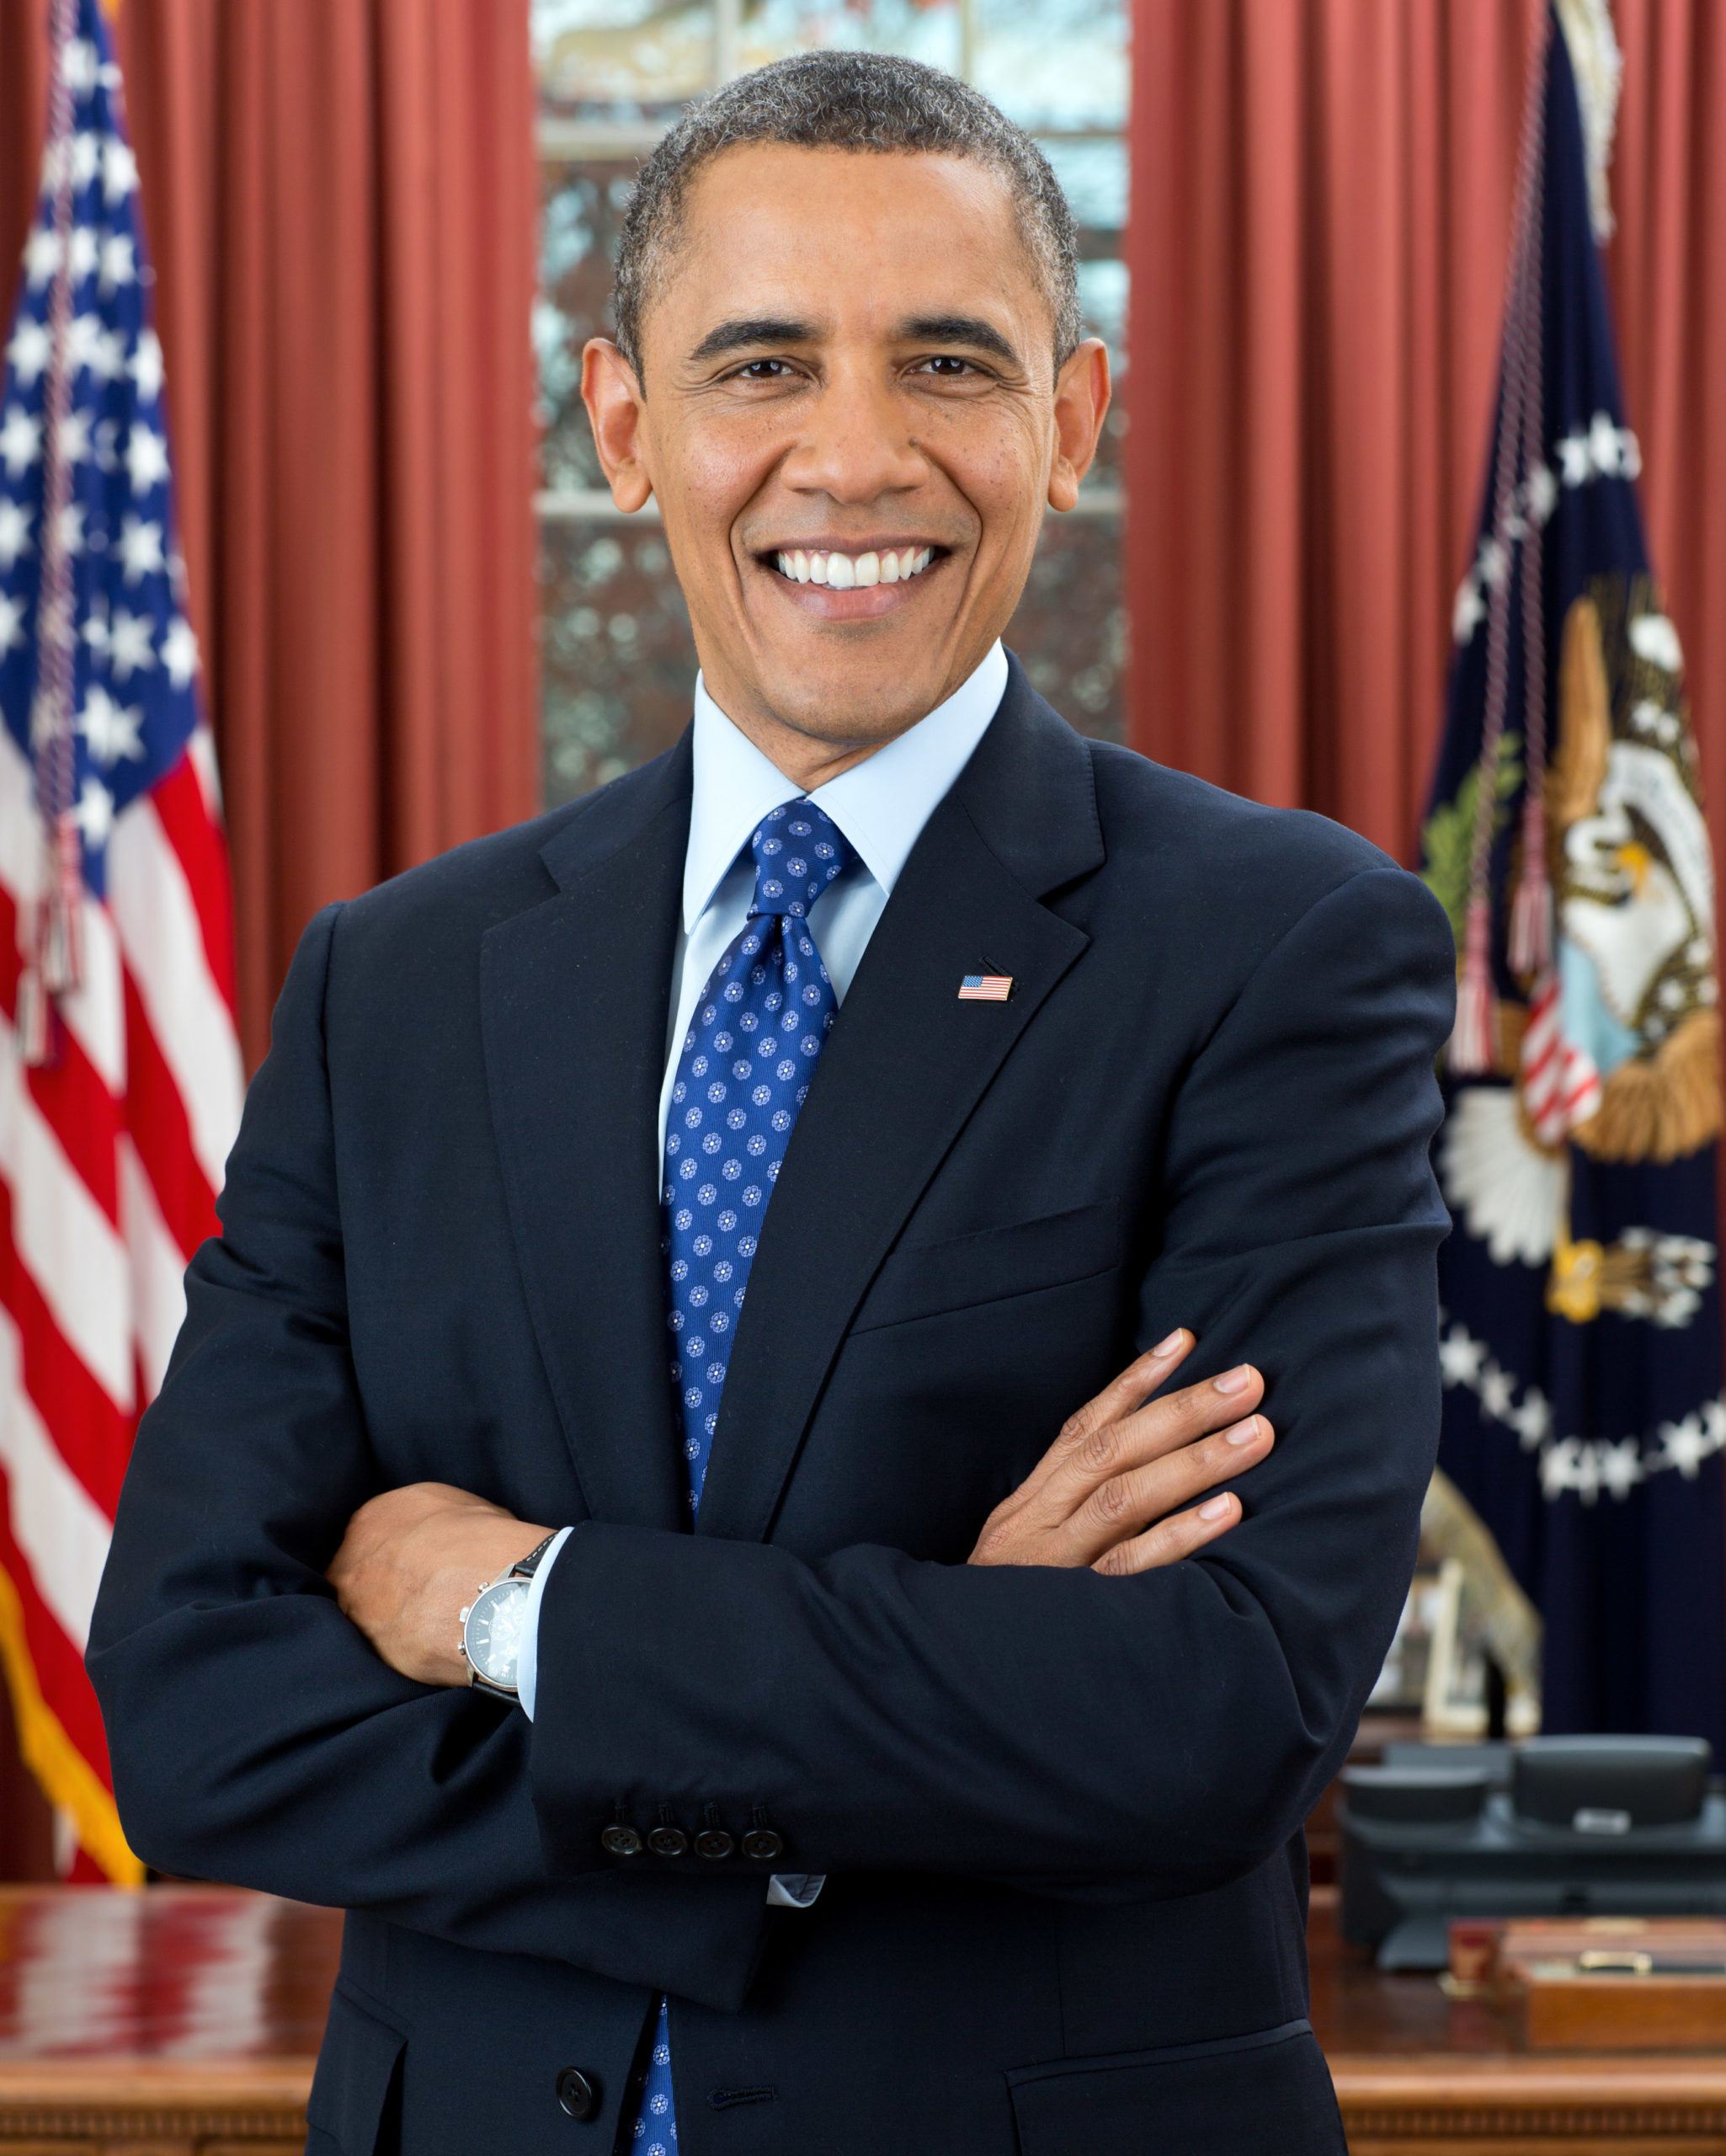 The photo of Barack Obama